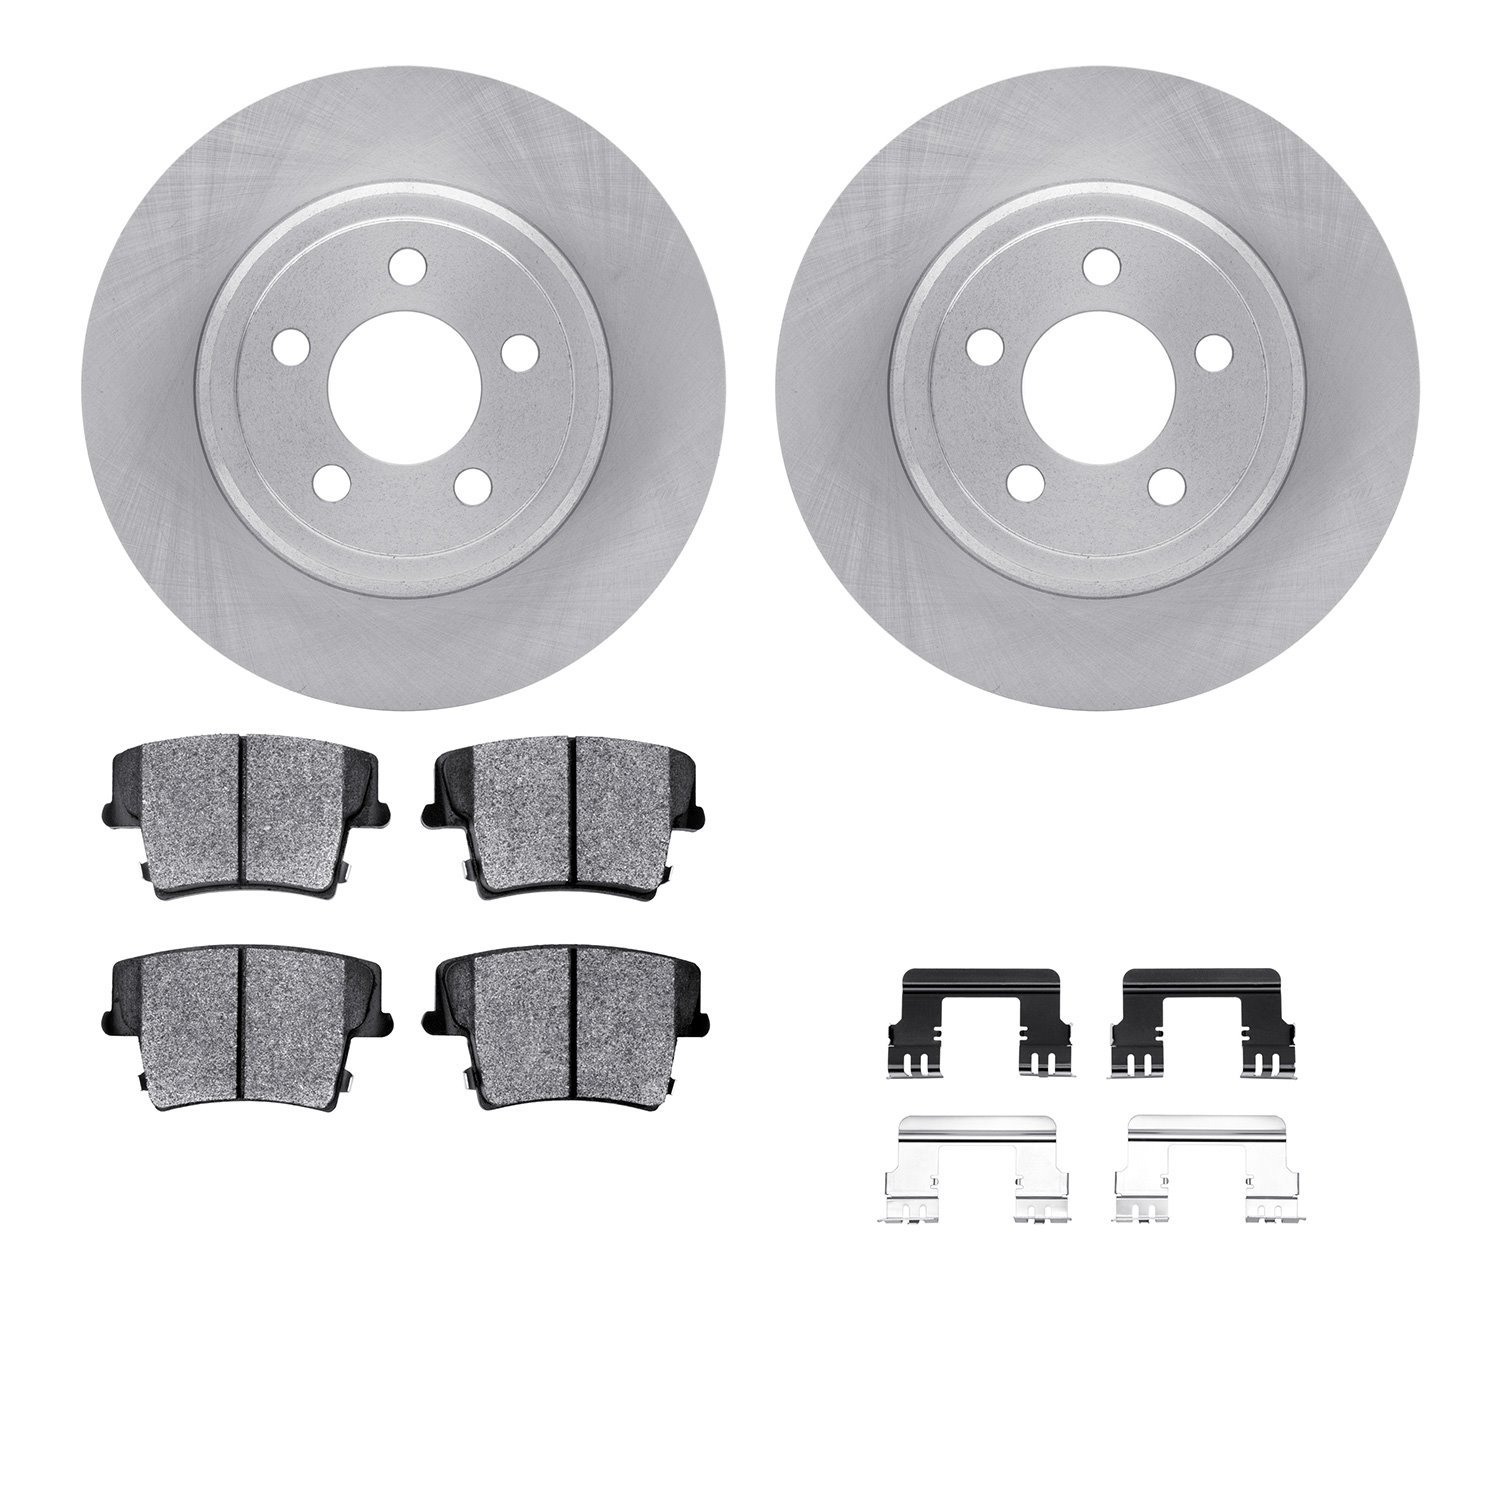 6212-39115 Brake Rotors w/Heavy-Duty Brake Pads Kit & Hardware, Fits Select Mopar, Position: Rear